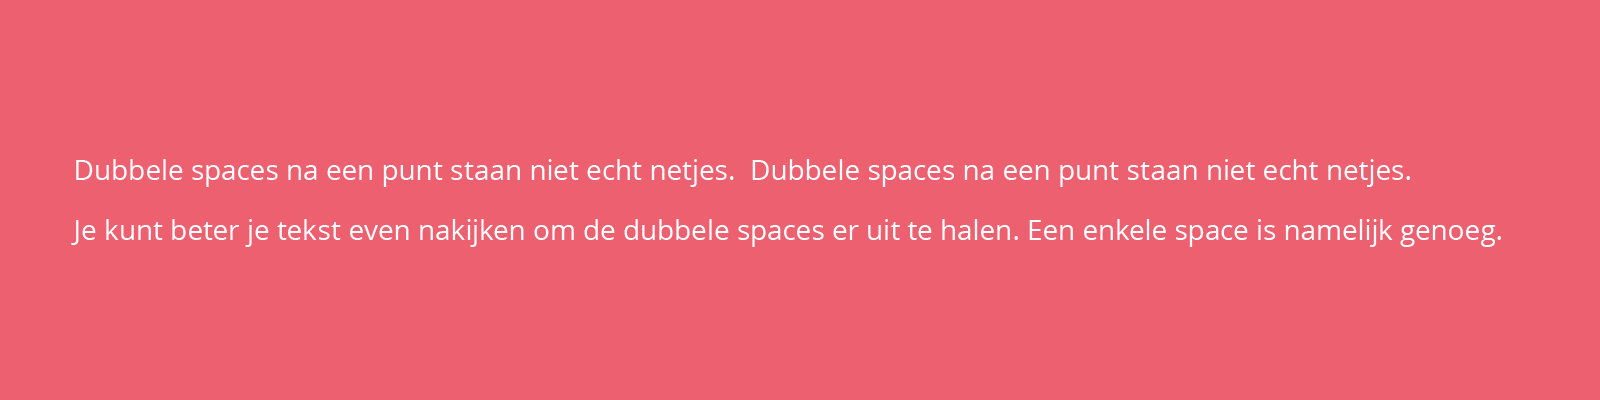 dubbele spaces